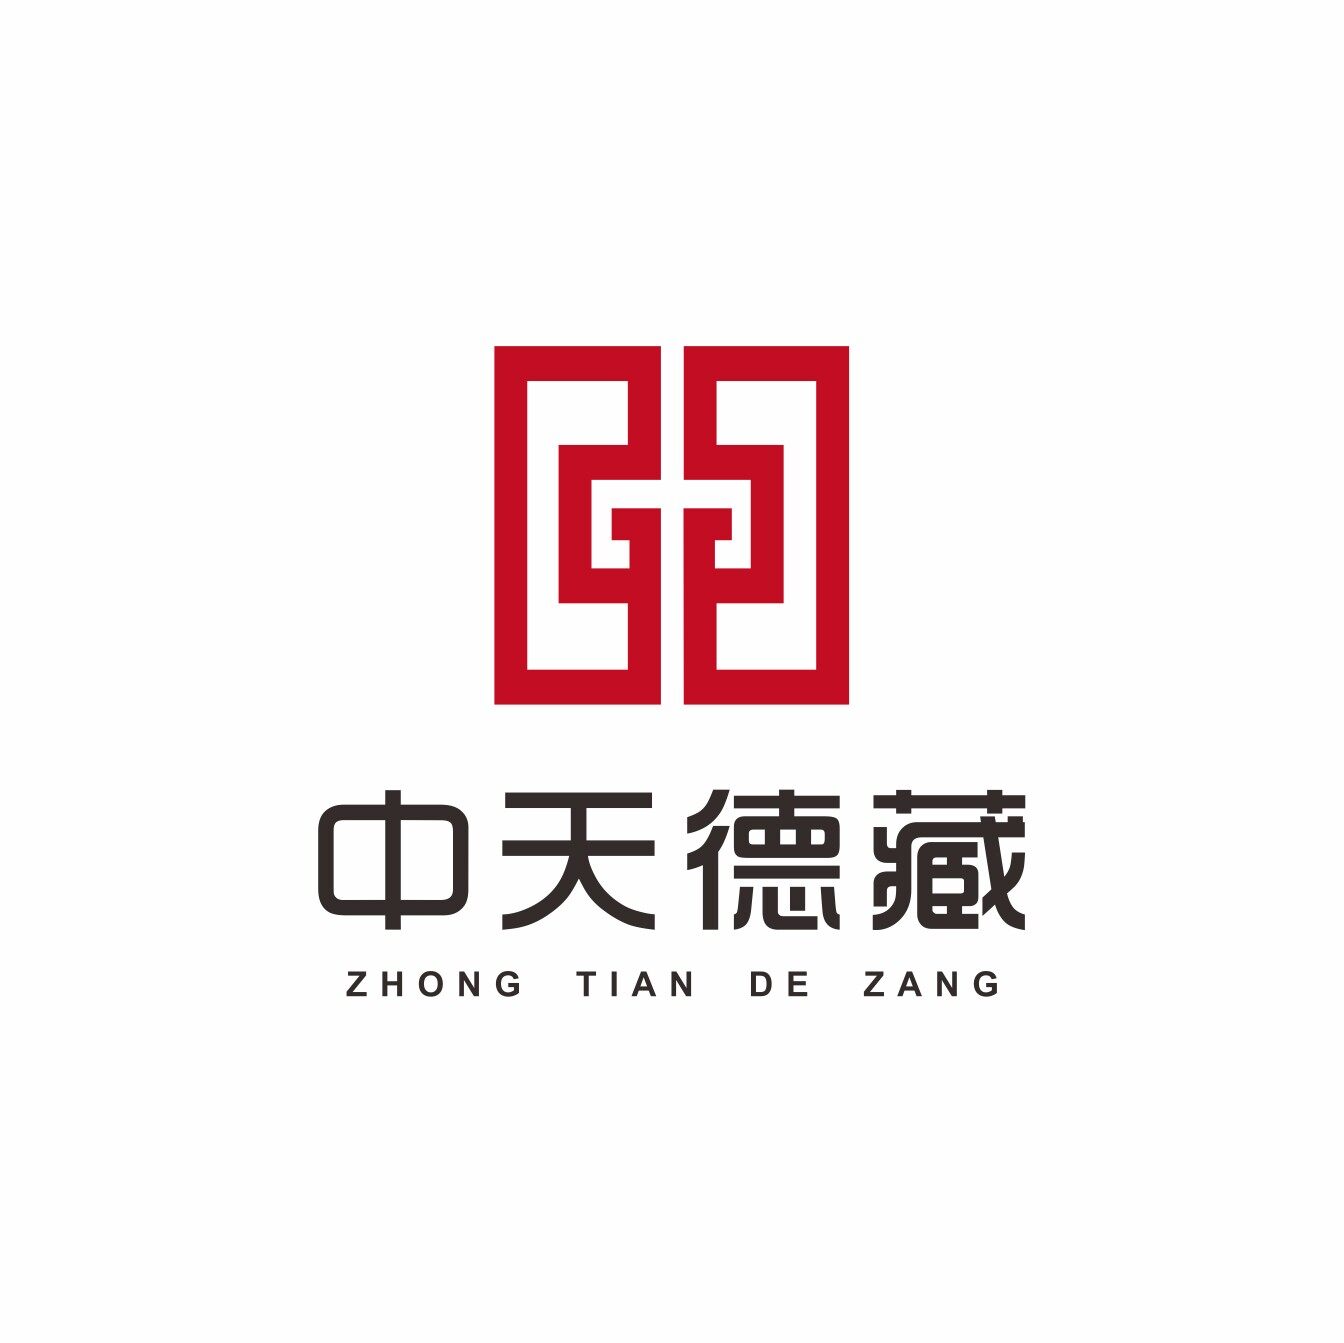 成都中天德藏文化传播有限公司logo